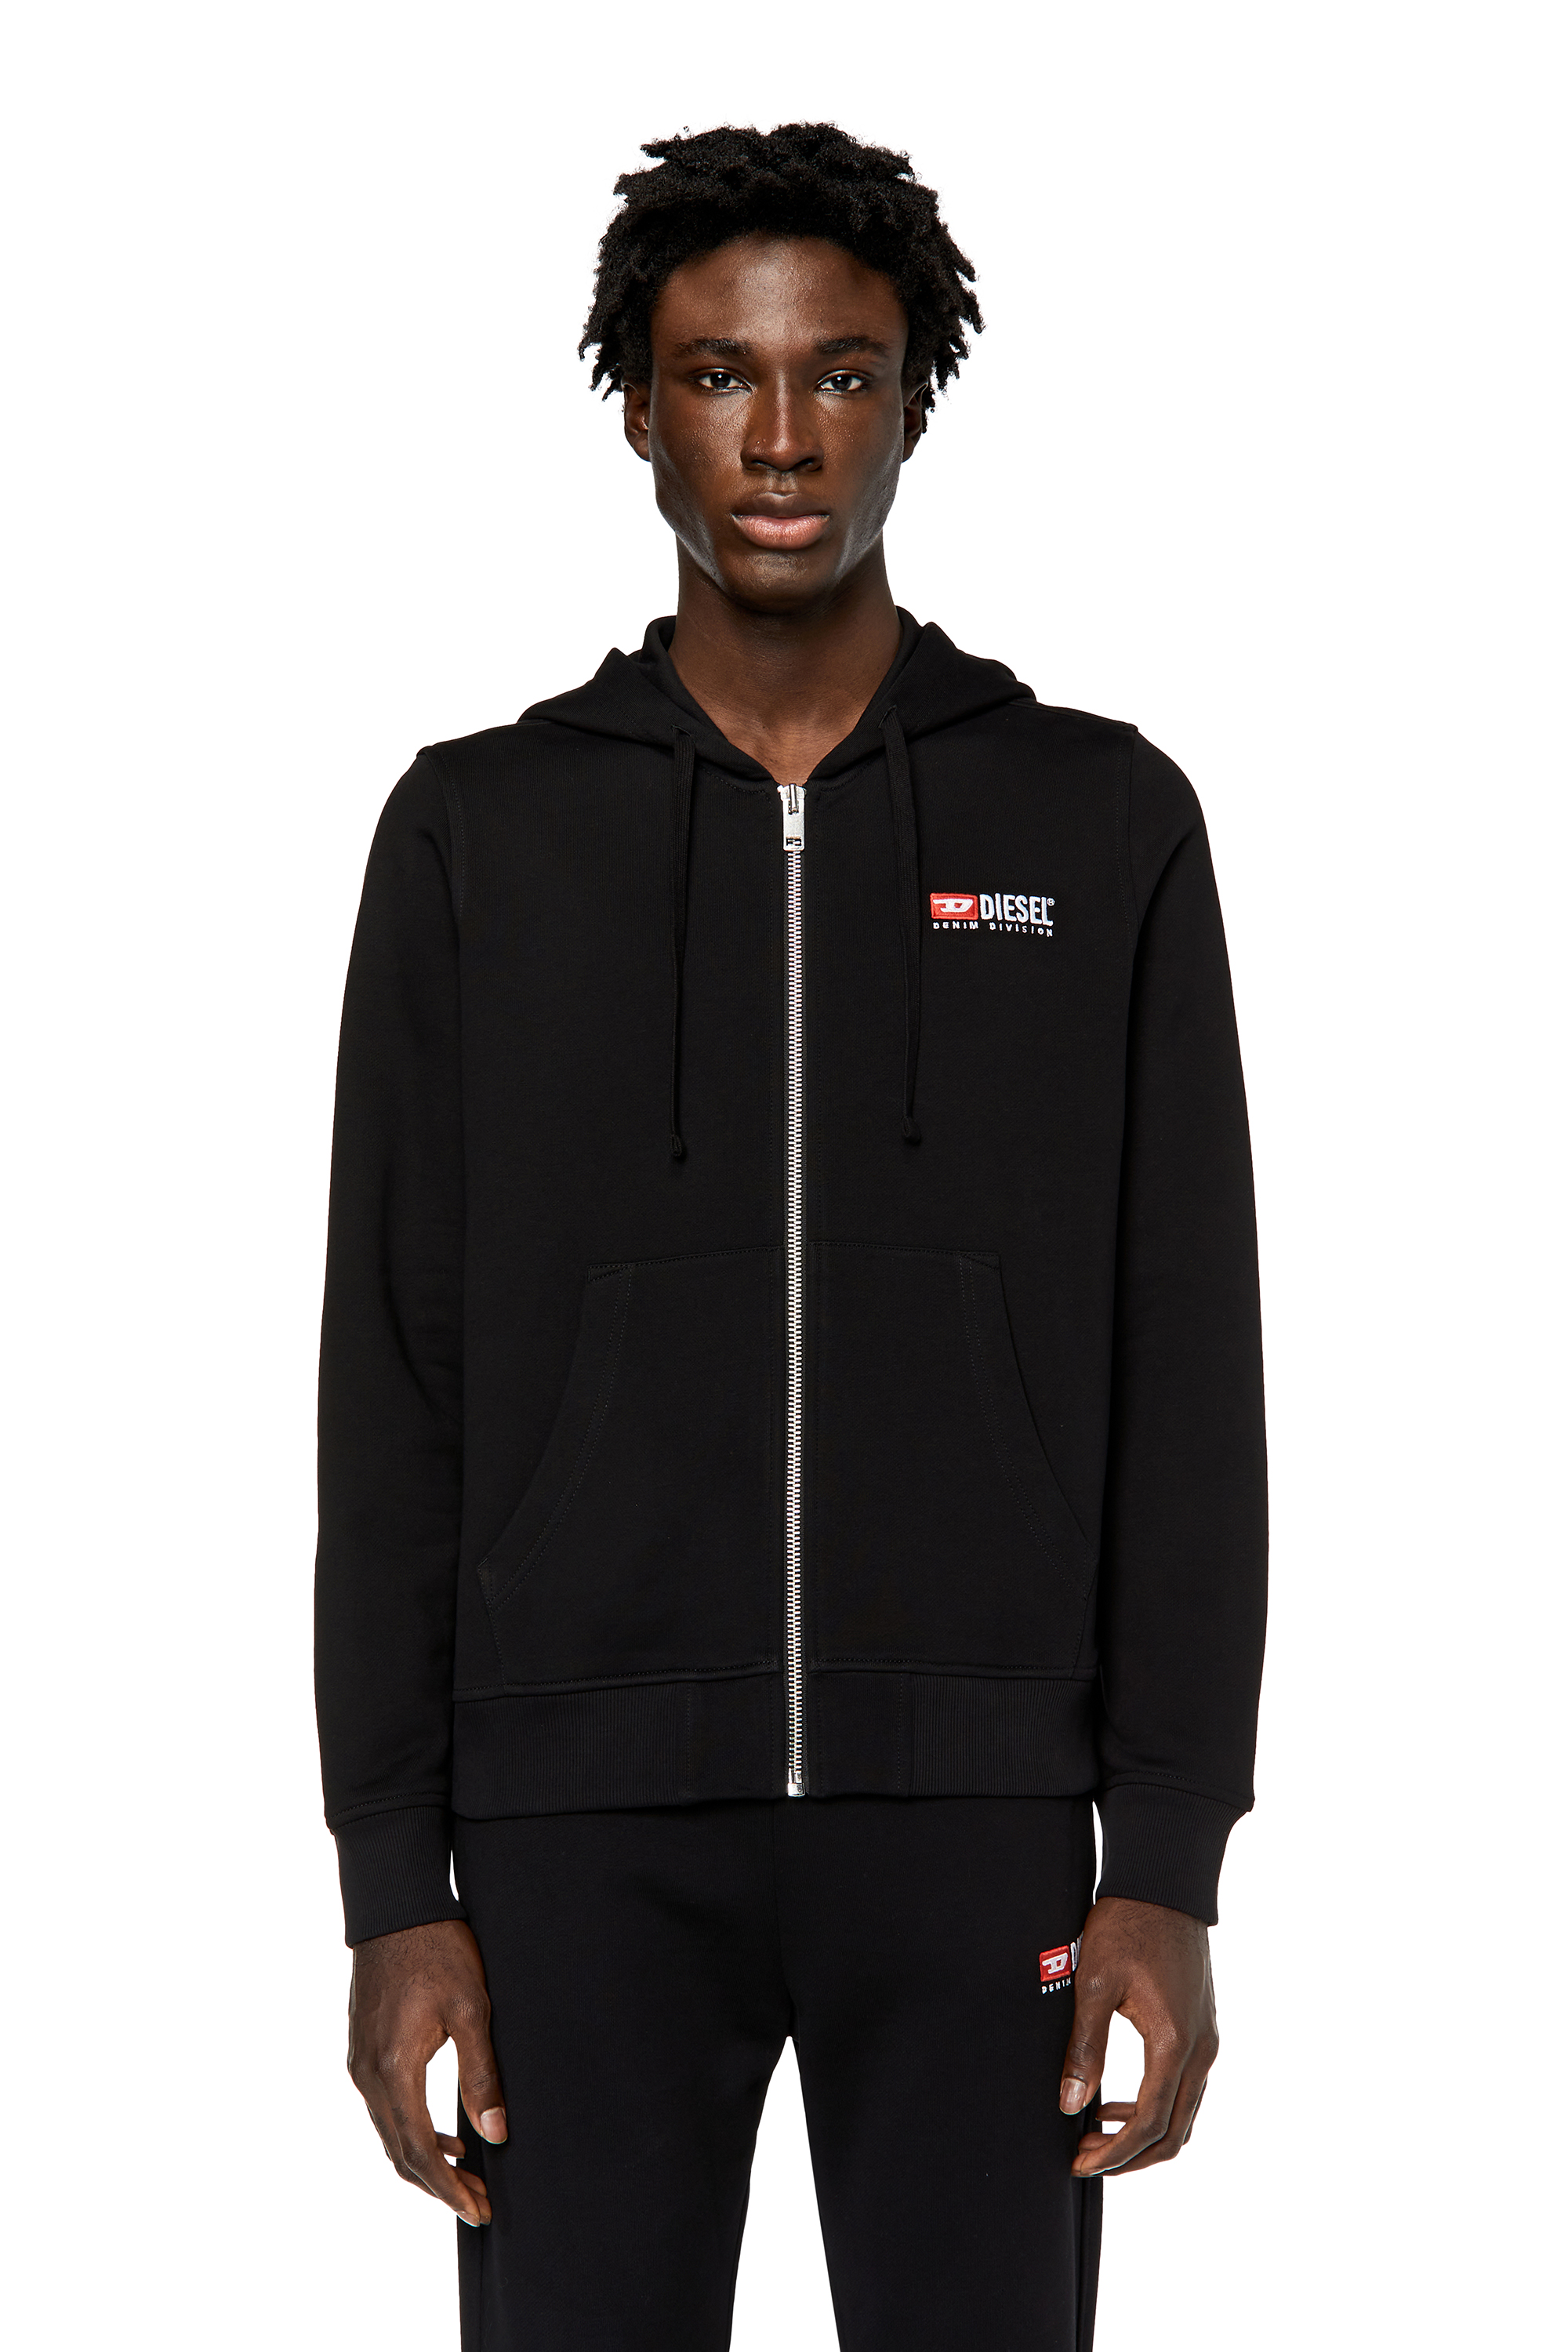 Diesel - Sweat-shirt à capuche zippé avec logo brodé - Pull Cotton - Homme - Noir